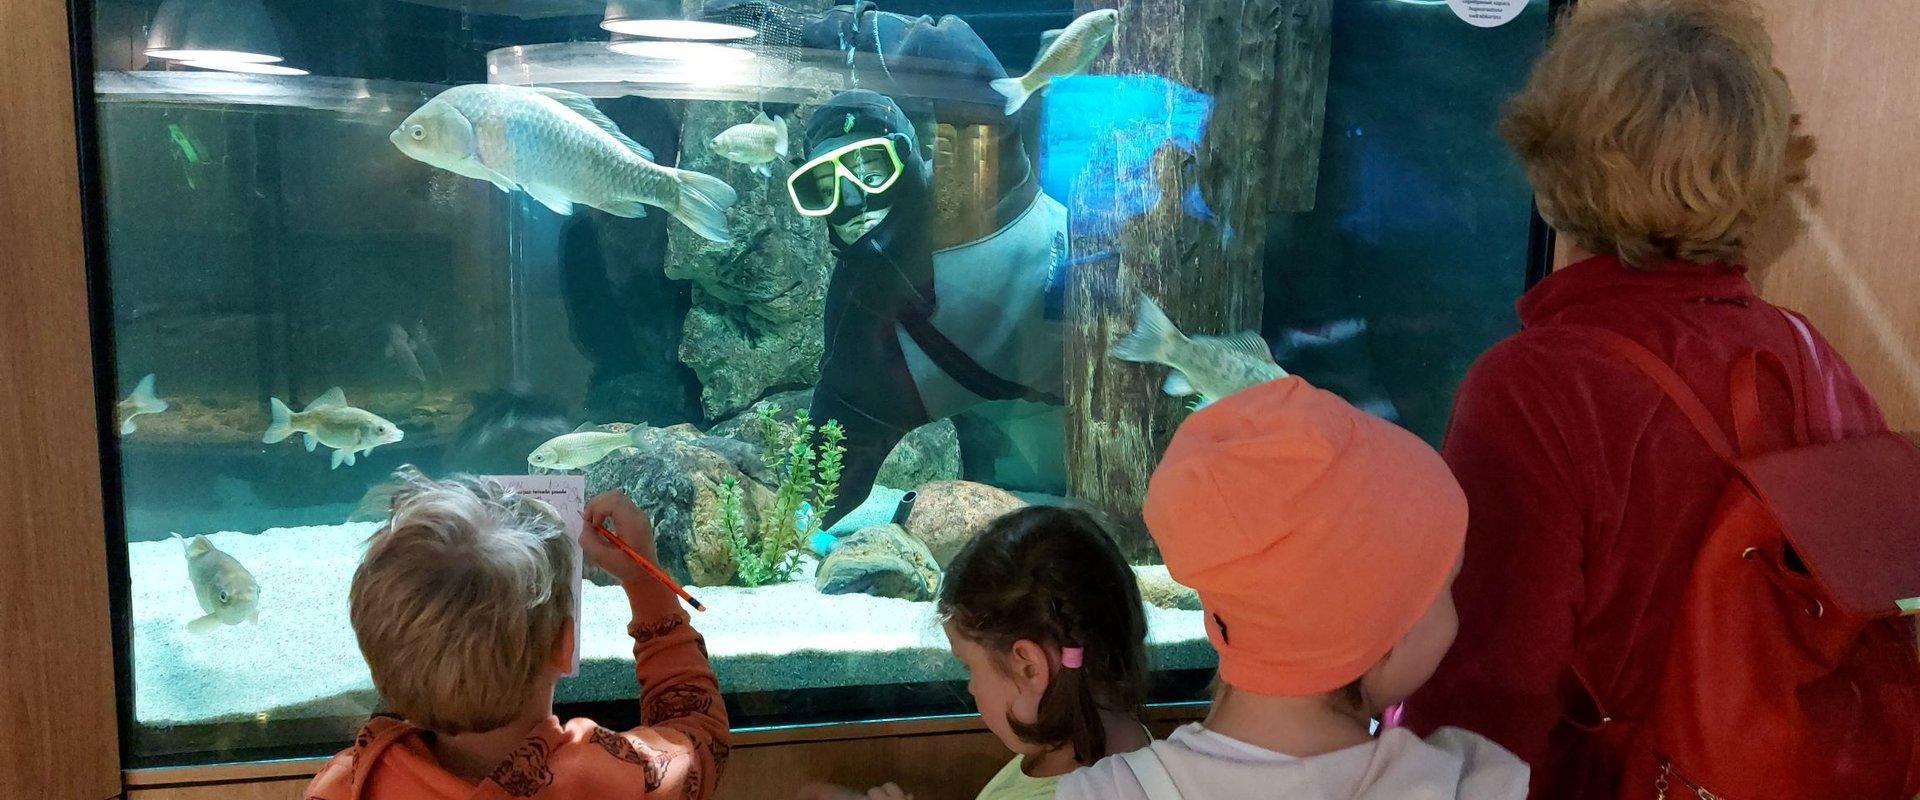 Lake Museum, aquarium and children exploring the fish